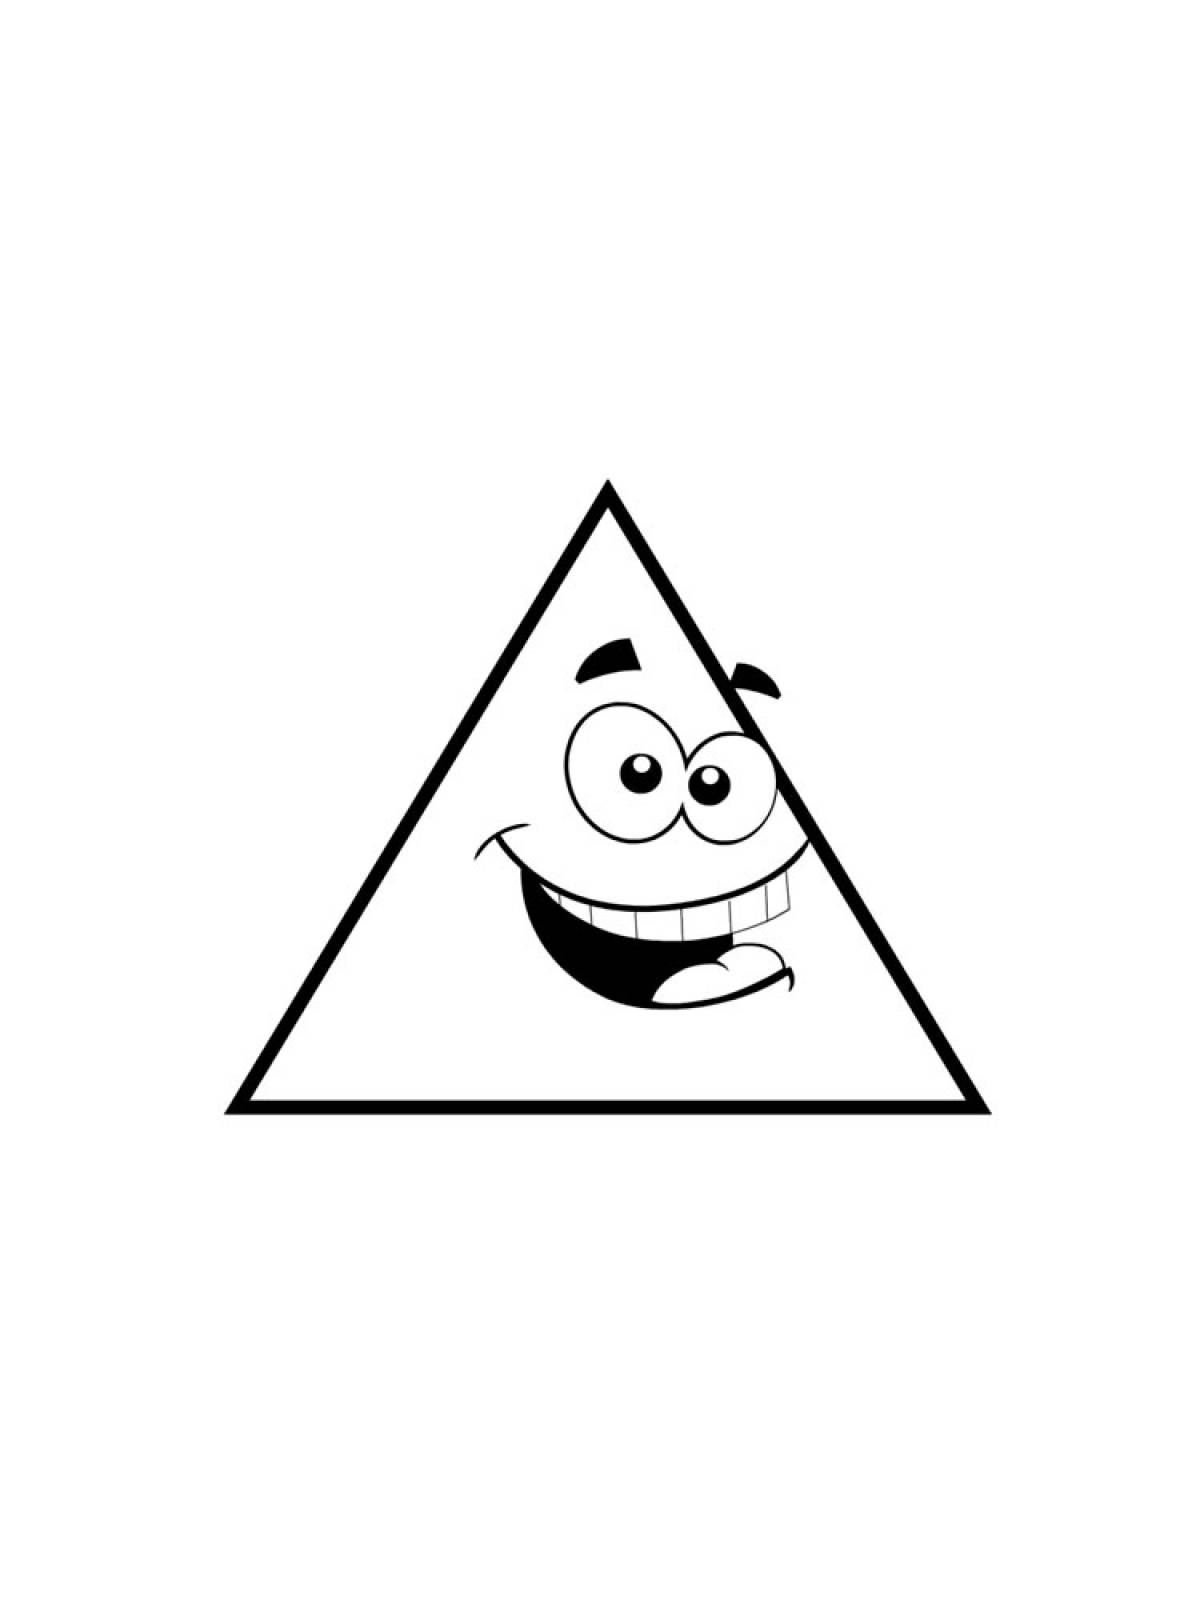 Треугольник 2